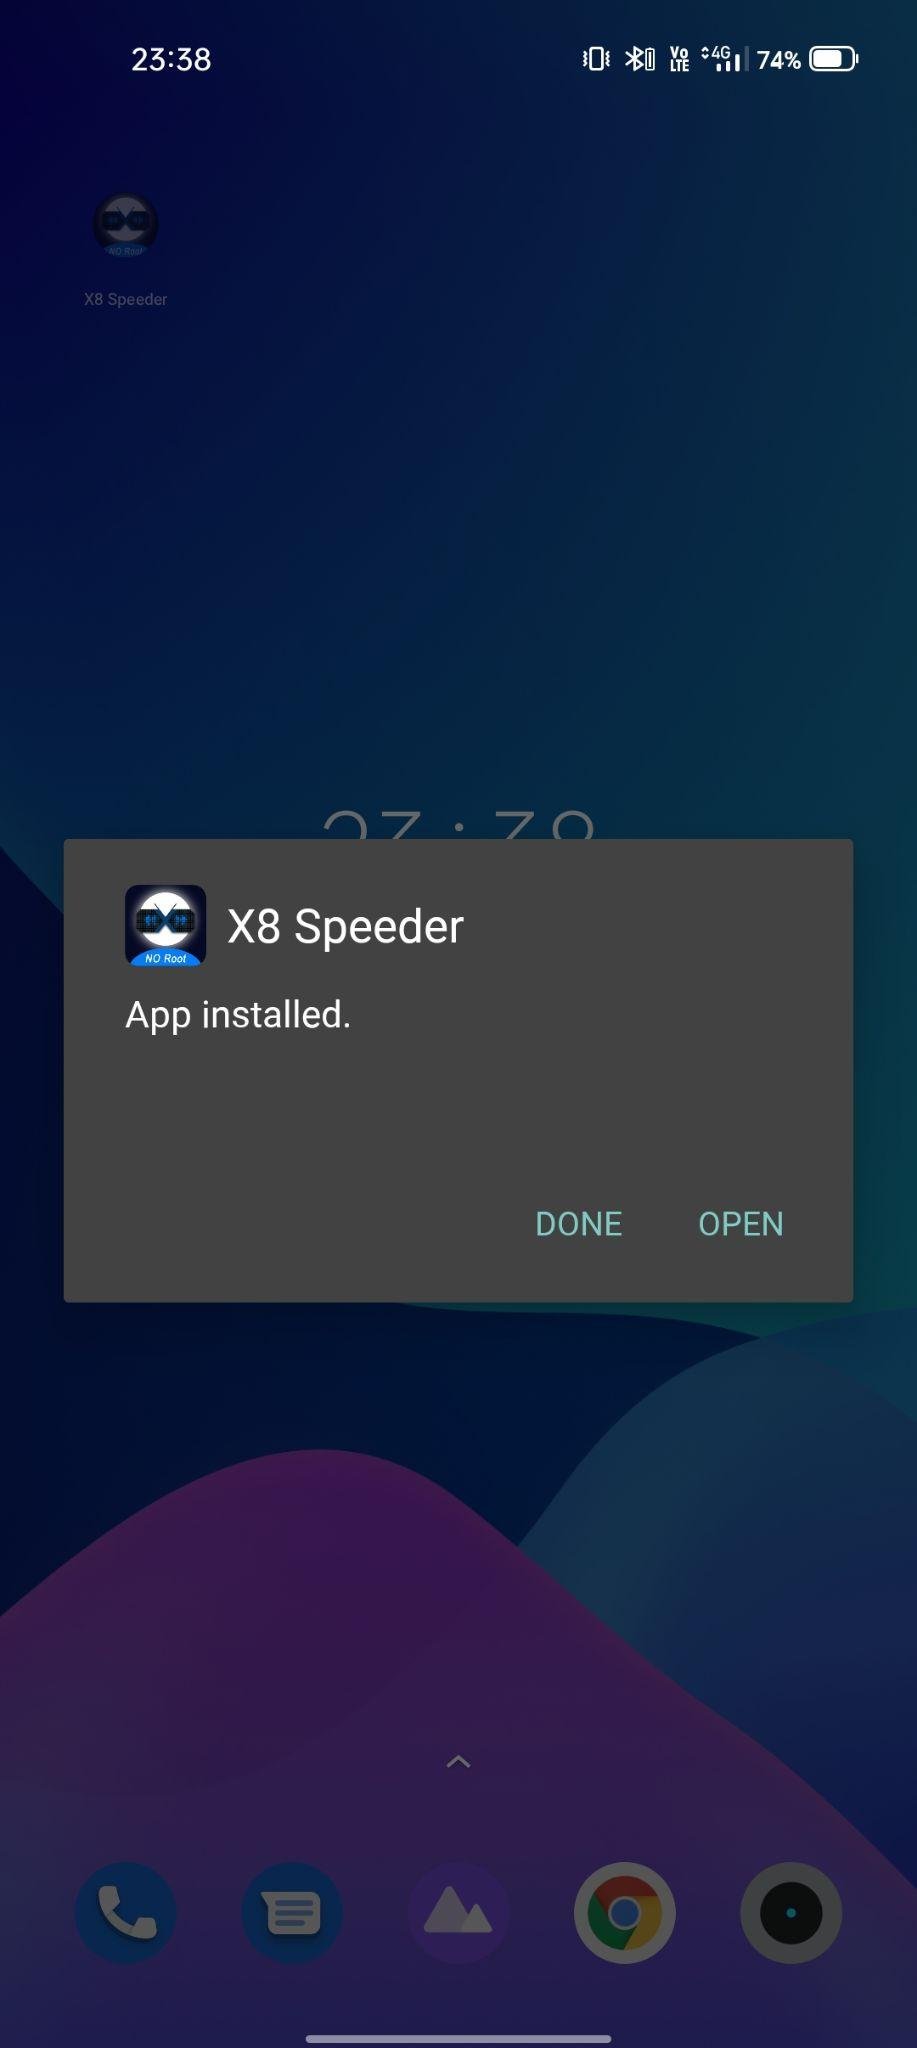 x8 speeder apk installed